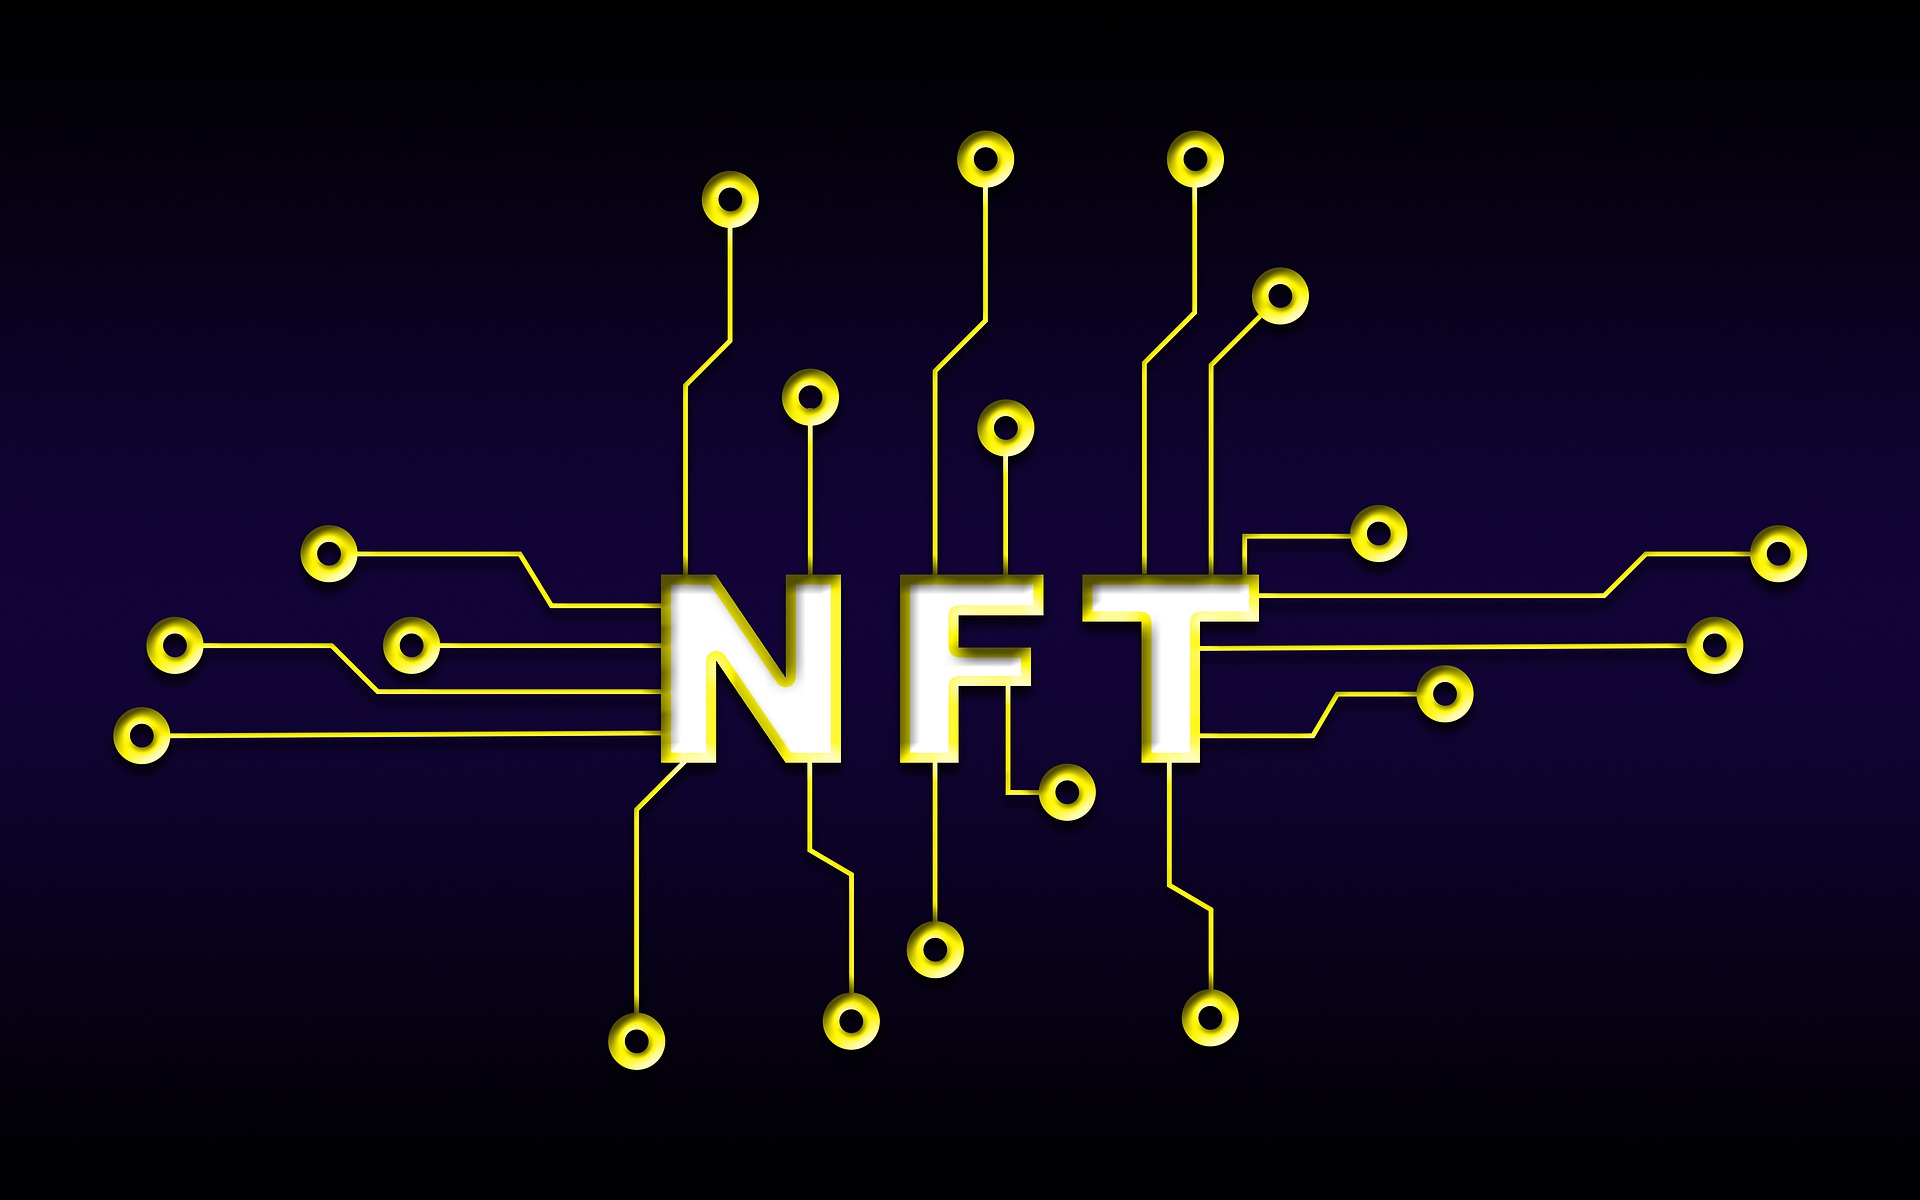 Les NFT : une technologie au potentiel révolutionnaire, mais qui peine à concrétiser